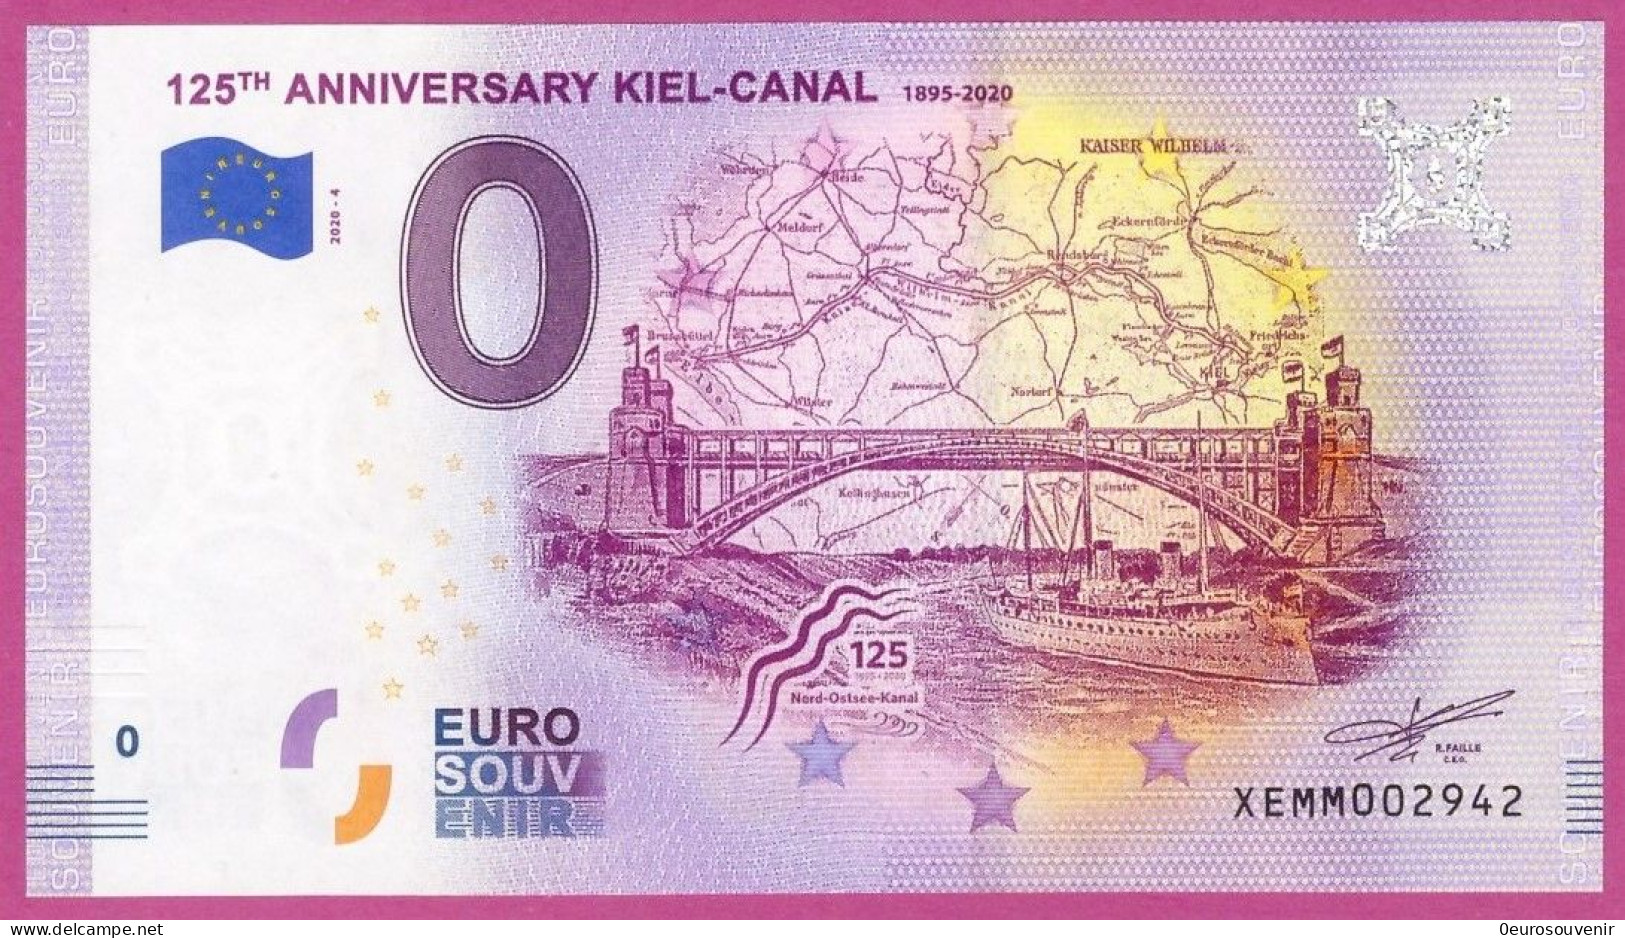 0-Euro XEMM 4 2020 125TH ANNIVERSARY KIEL-CANAL - YACHT VOR BRÜCKE - Essais Privés / Non-officiels